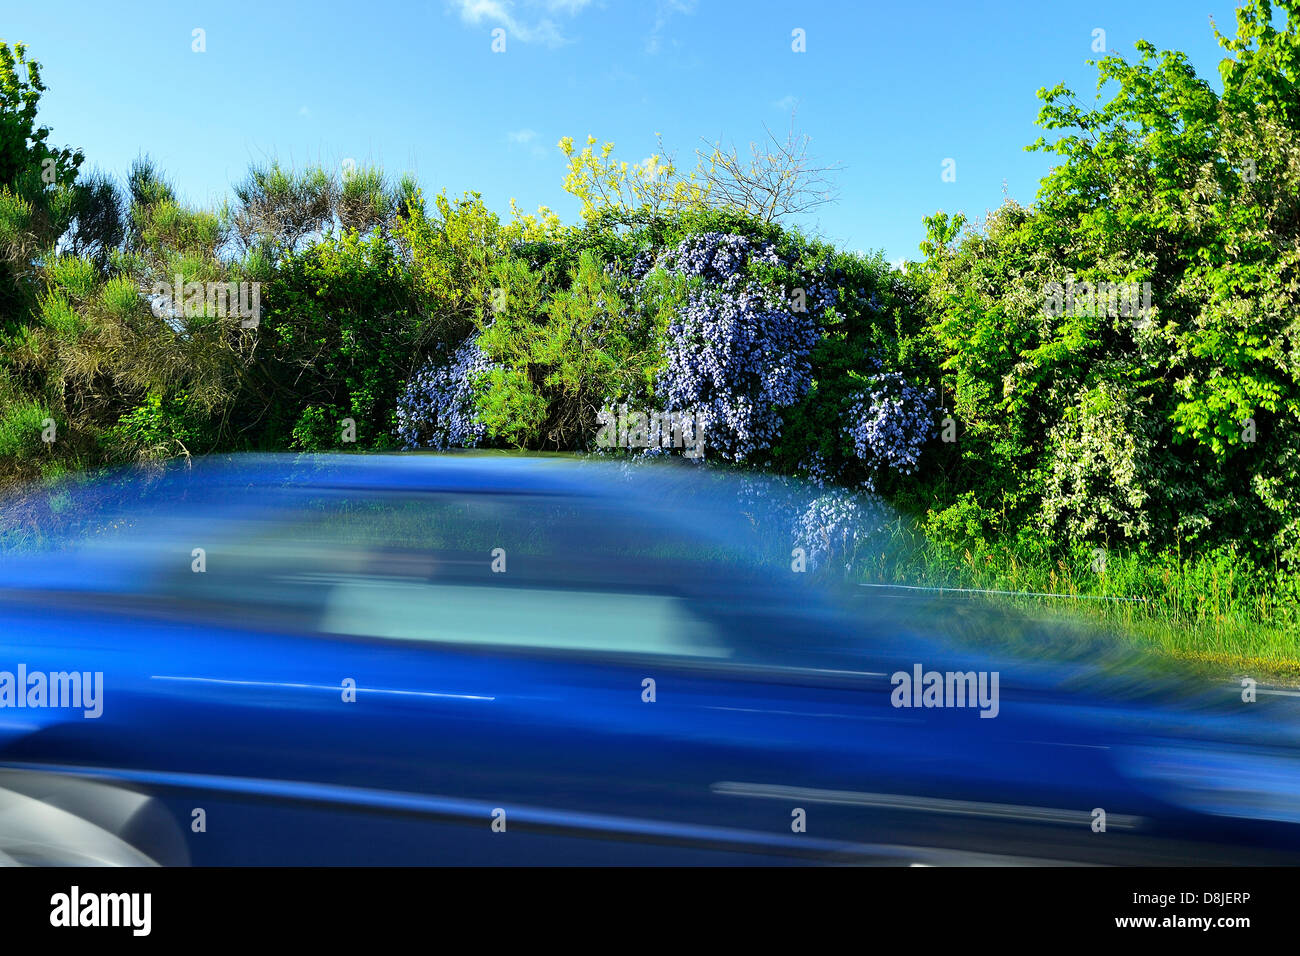 Auto blu su una strada auto blu su una strada con motion blur, strada refilato con un ostacolo di arbusti con fiori di colore blu. Foto Stock